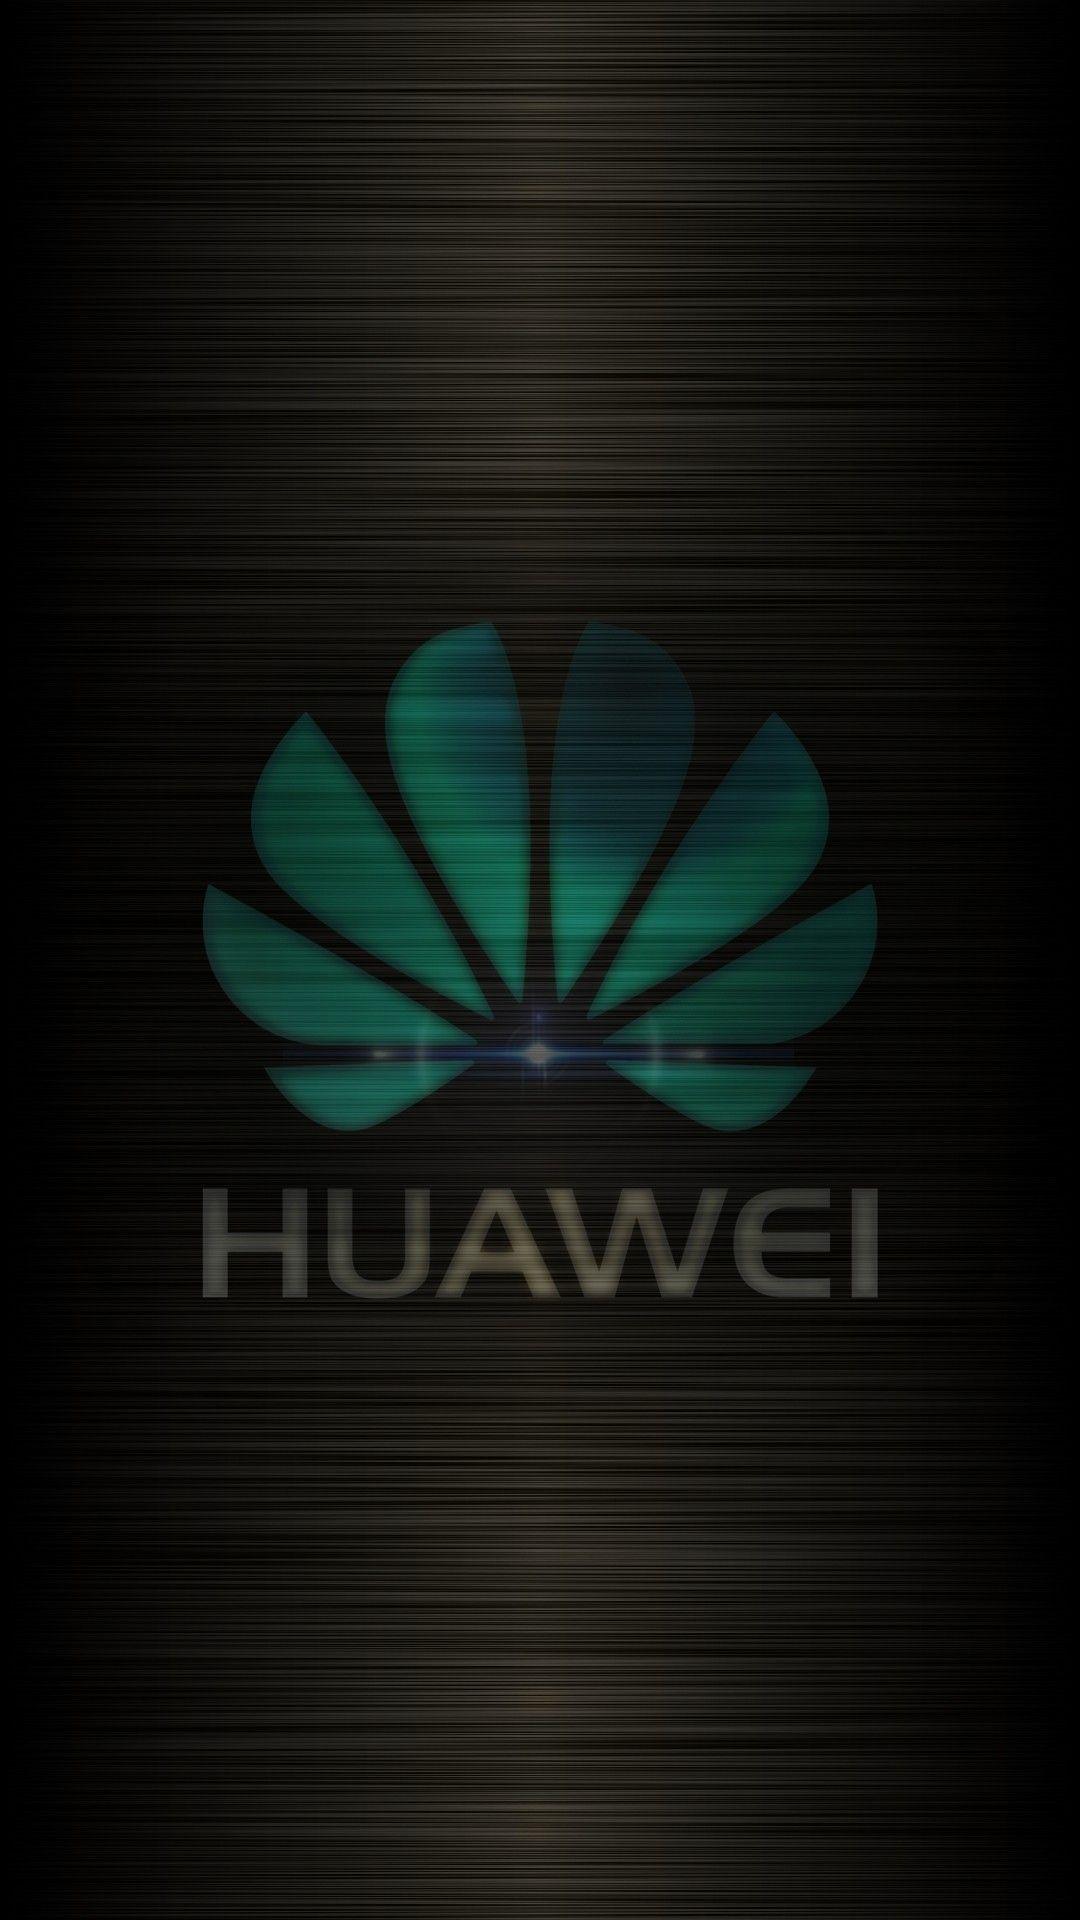 Huawei Wallpaper - [1080x1920]. Huawei wallpaper